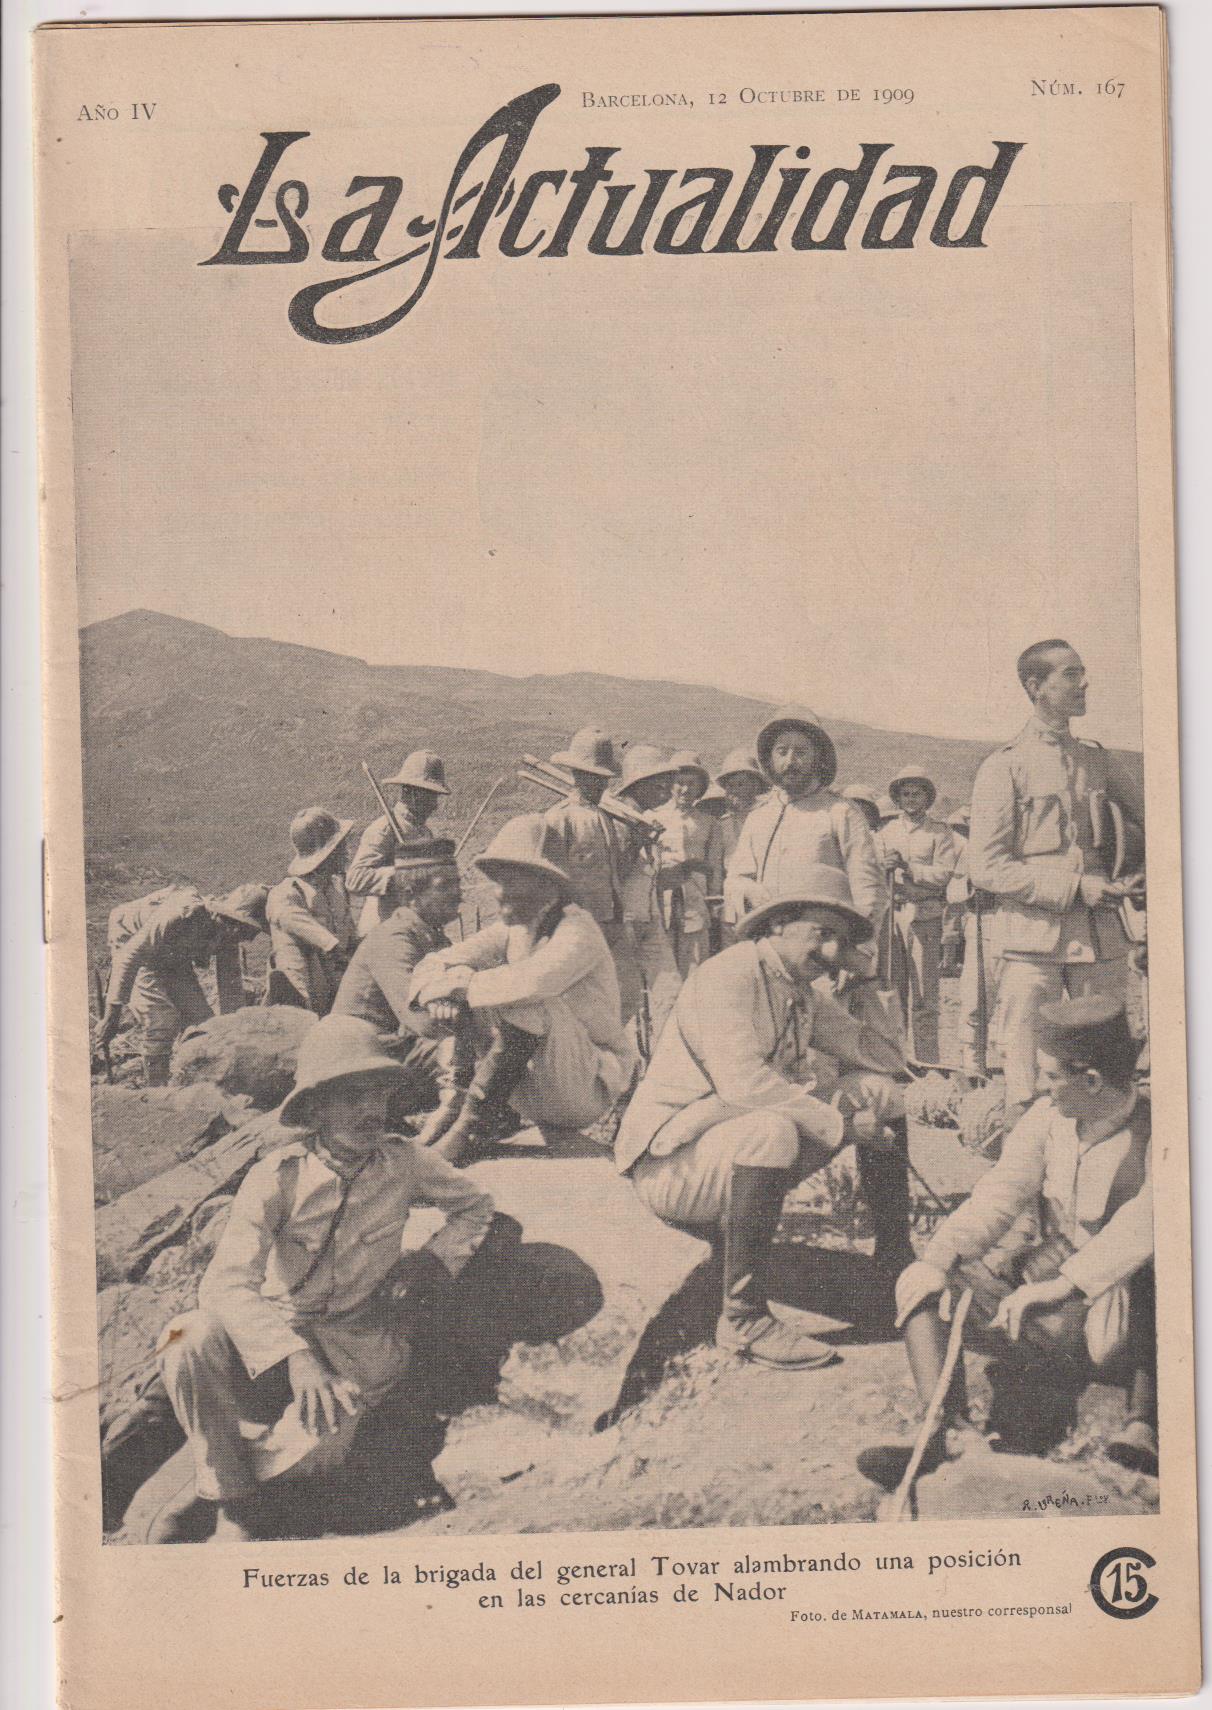 La Actualidad. Revista Mundial de Información Gráfica nº 167. Barcelona 12 octubre 1909. Noticias del Rif en 12 páginas de fotografías